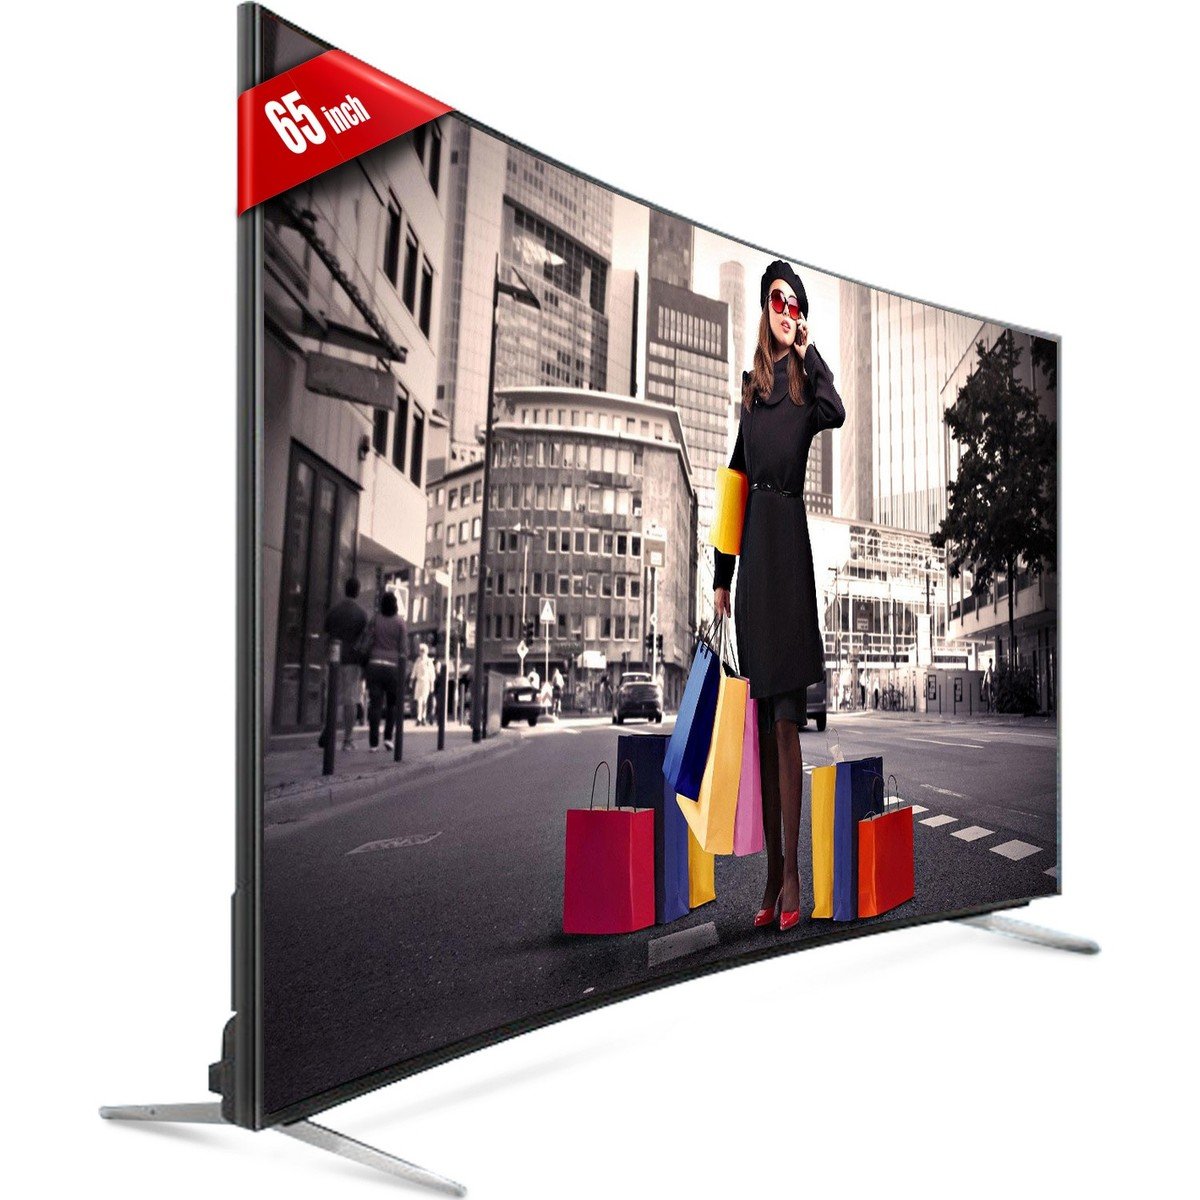 Ikon 4K Ultra HD Smart Curved LED TV IKE65DUS 65